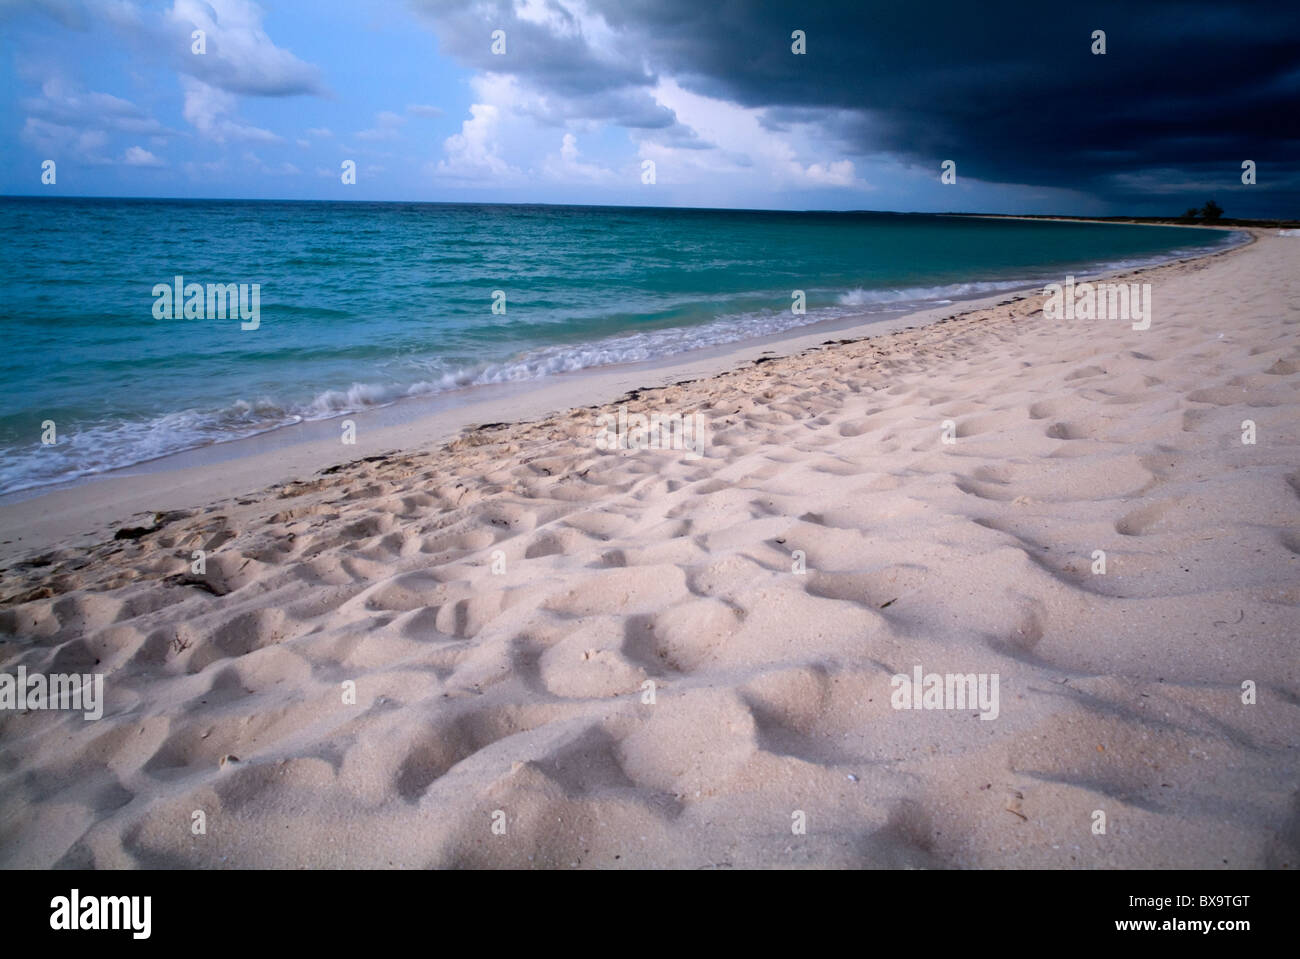 Plage de sable blanc et eaux magnifiques sous un ciel d'orage menaçant à Cayo Santa-Maria, Cuba. Banque D'Images